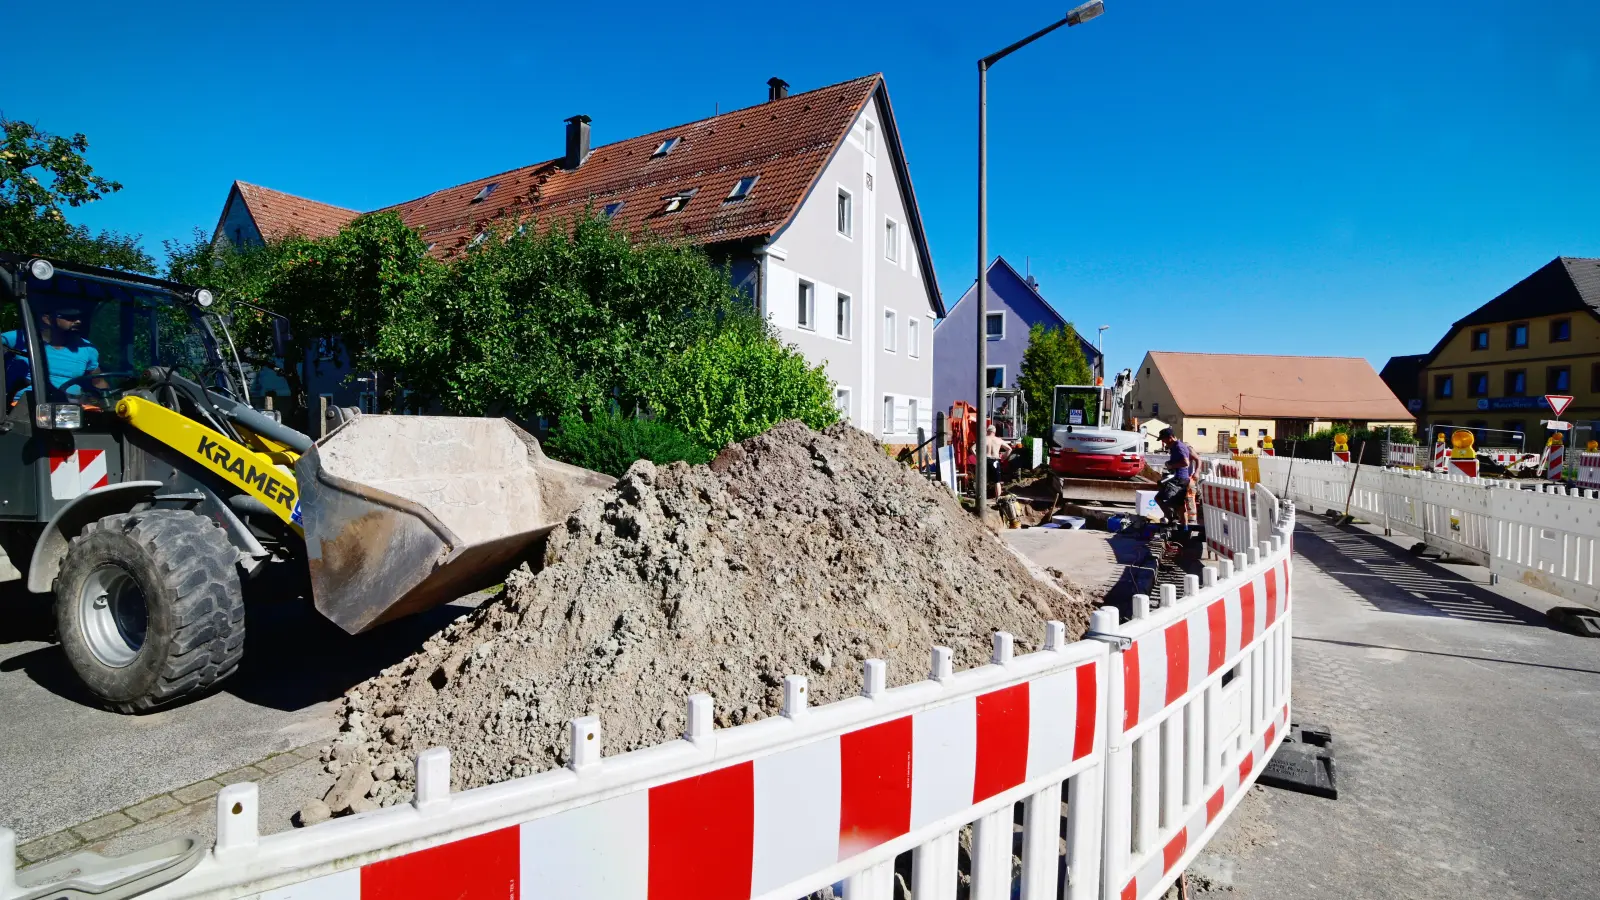 In Katterbach wird derzeit heftig gebaggert. Als letzter Ortsteil Ansbachs bekommt das Dorf eine Kanalisation und wird an die Zentralkläranlage angeschlossen. (Foto: Jim Albright)